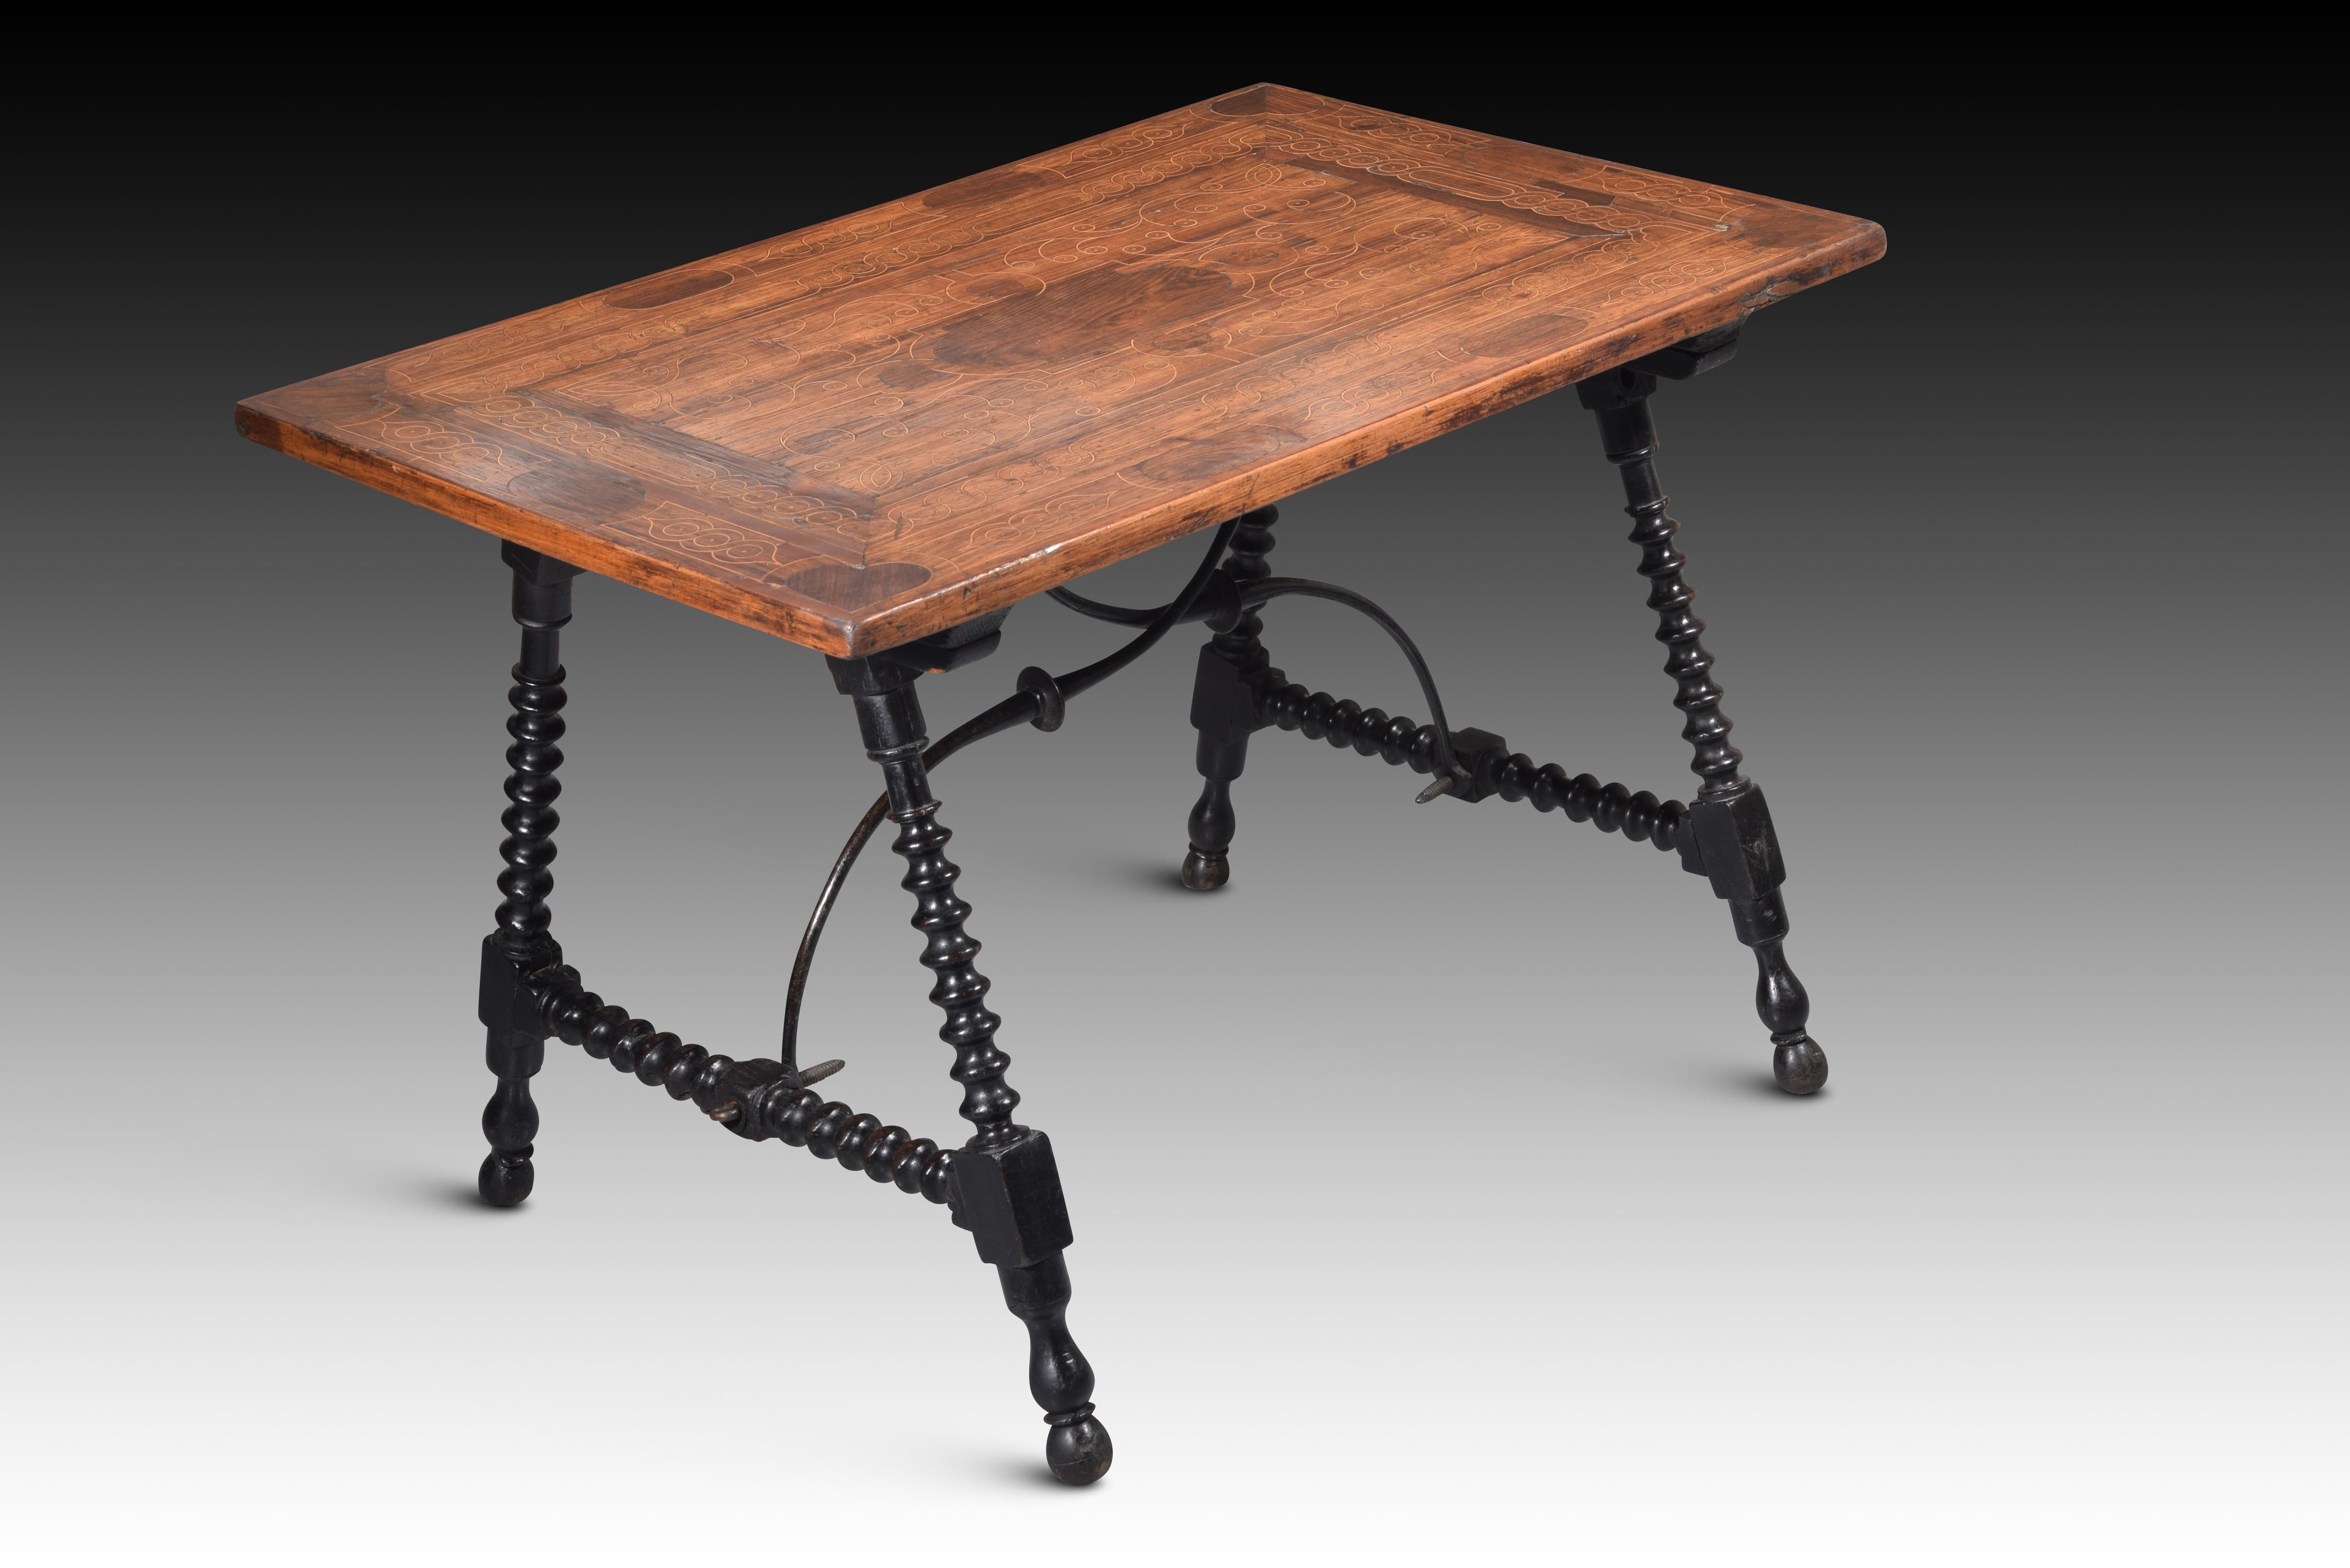 Tisch mit Linsen- und Intarsienbeinen.  Jahrhundert XVIII. 
Tisch mit vier gedrechselten Scheibenbeinen (von der Art, die als Linsenbein bekannt ist), die zwei mal zwei durch Chambrana mit dem gleichen dekorativen Element verbunden sind, das mit